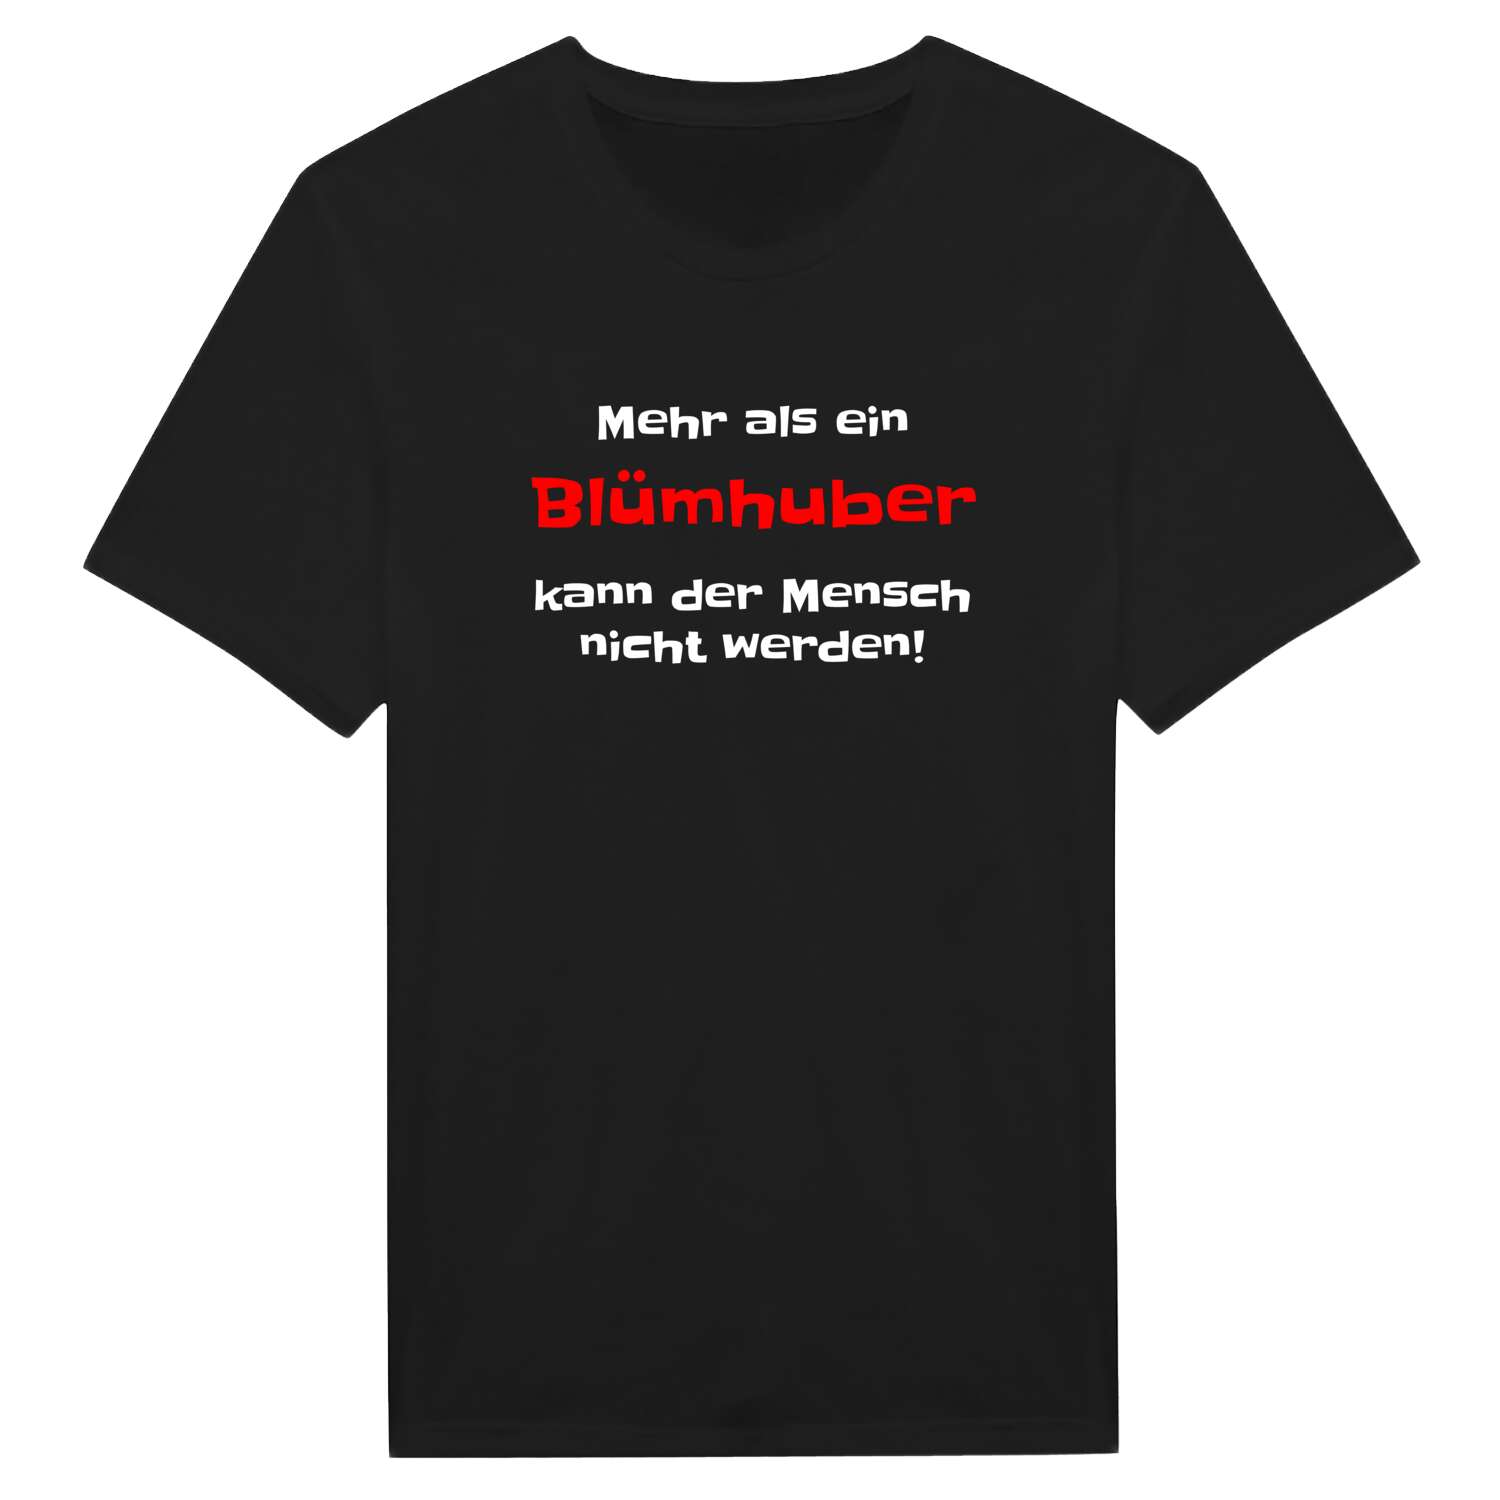 Blümhub T-Shirt »Mehr als ein«